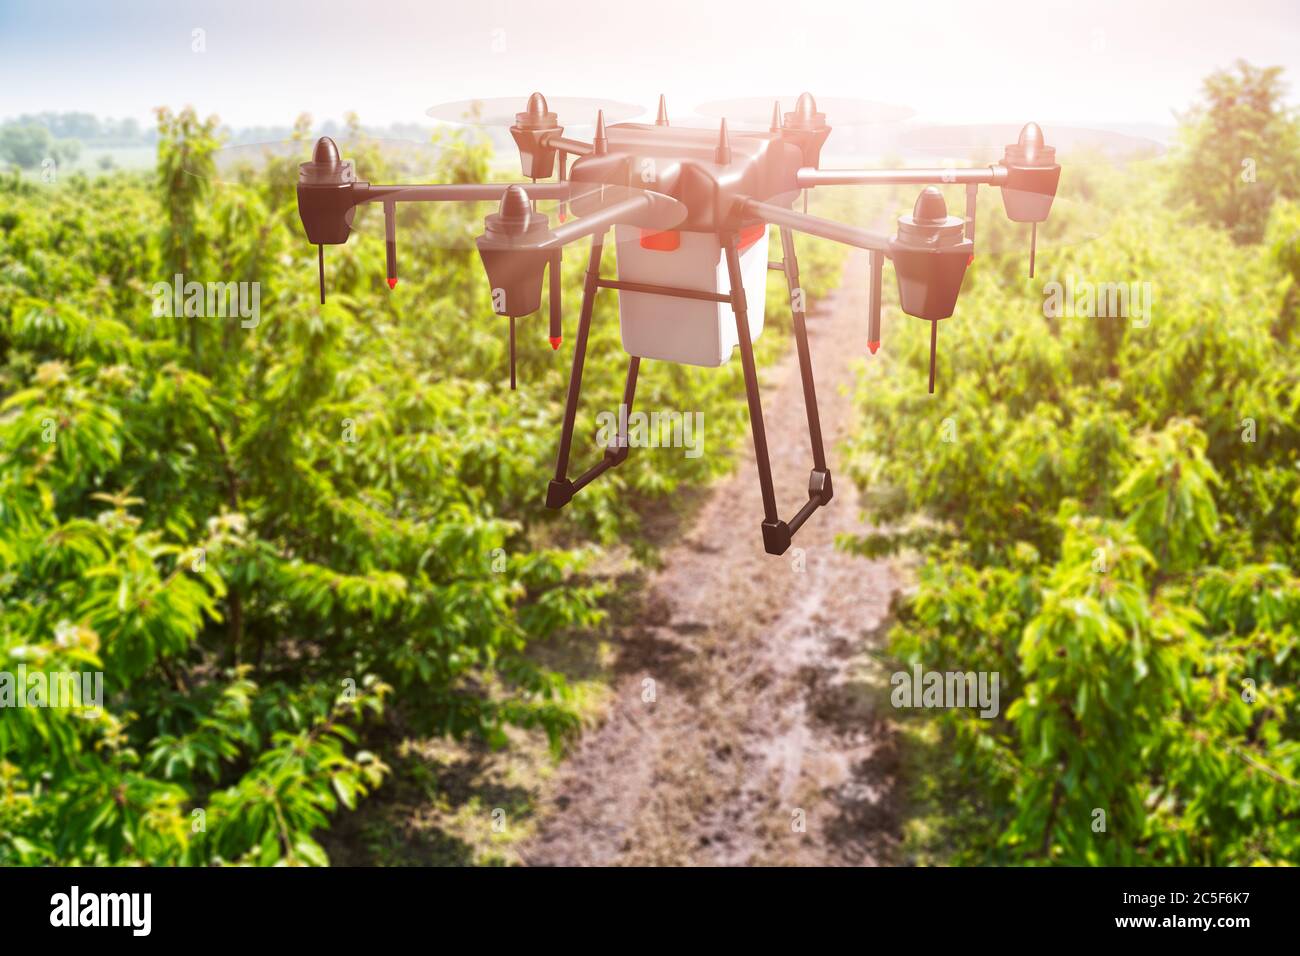 Agricultura Industria Tecnología agrícola en campo vegetal o granja Foto de stock